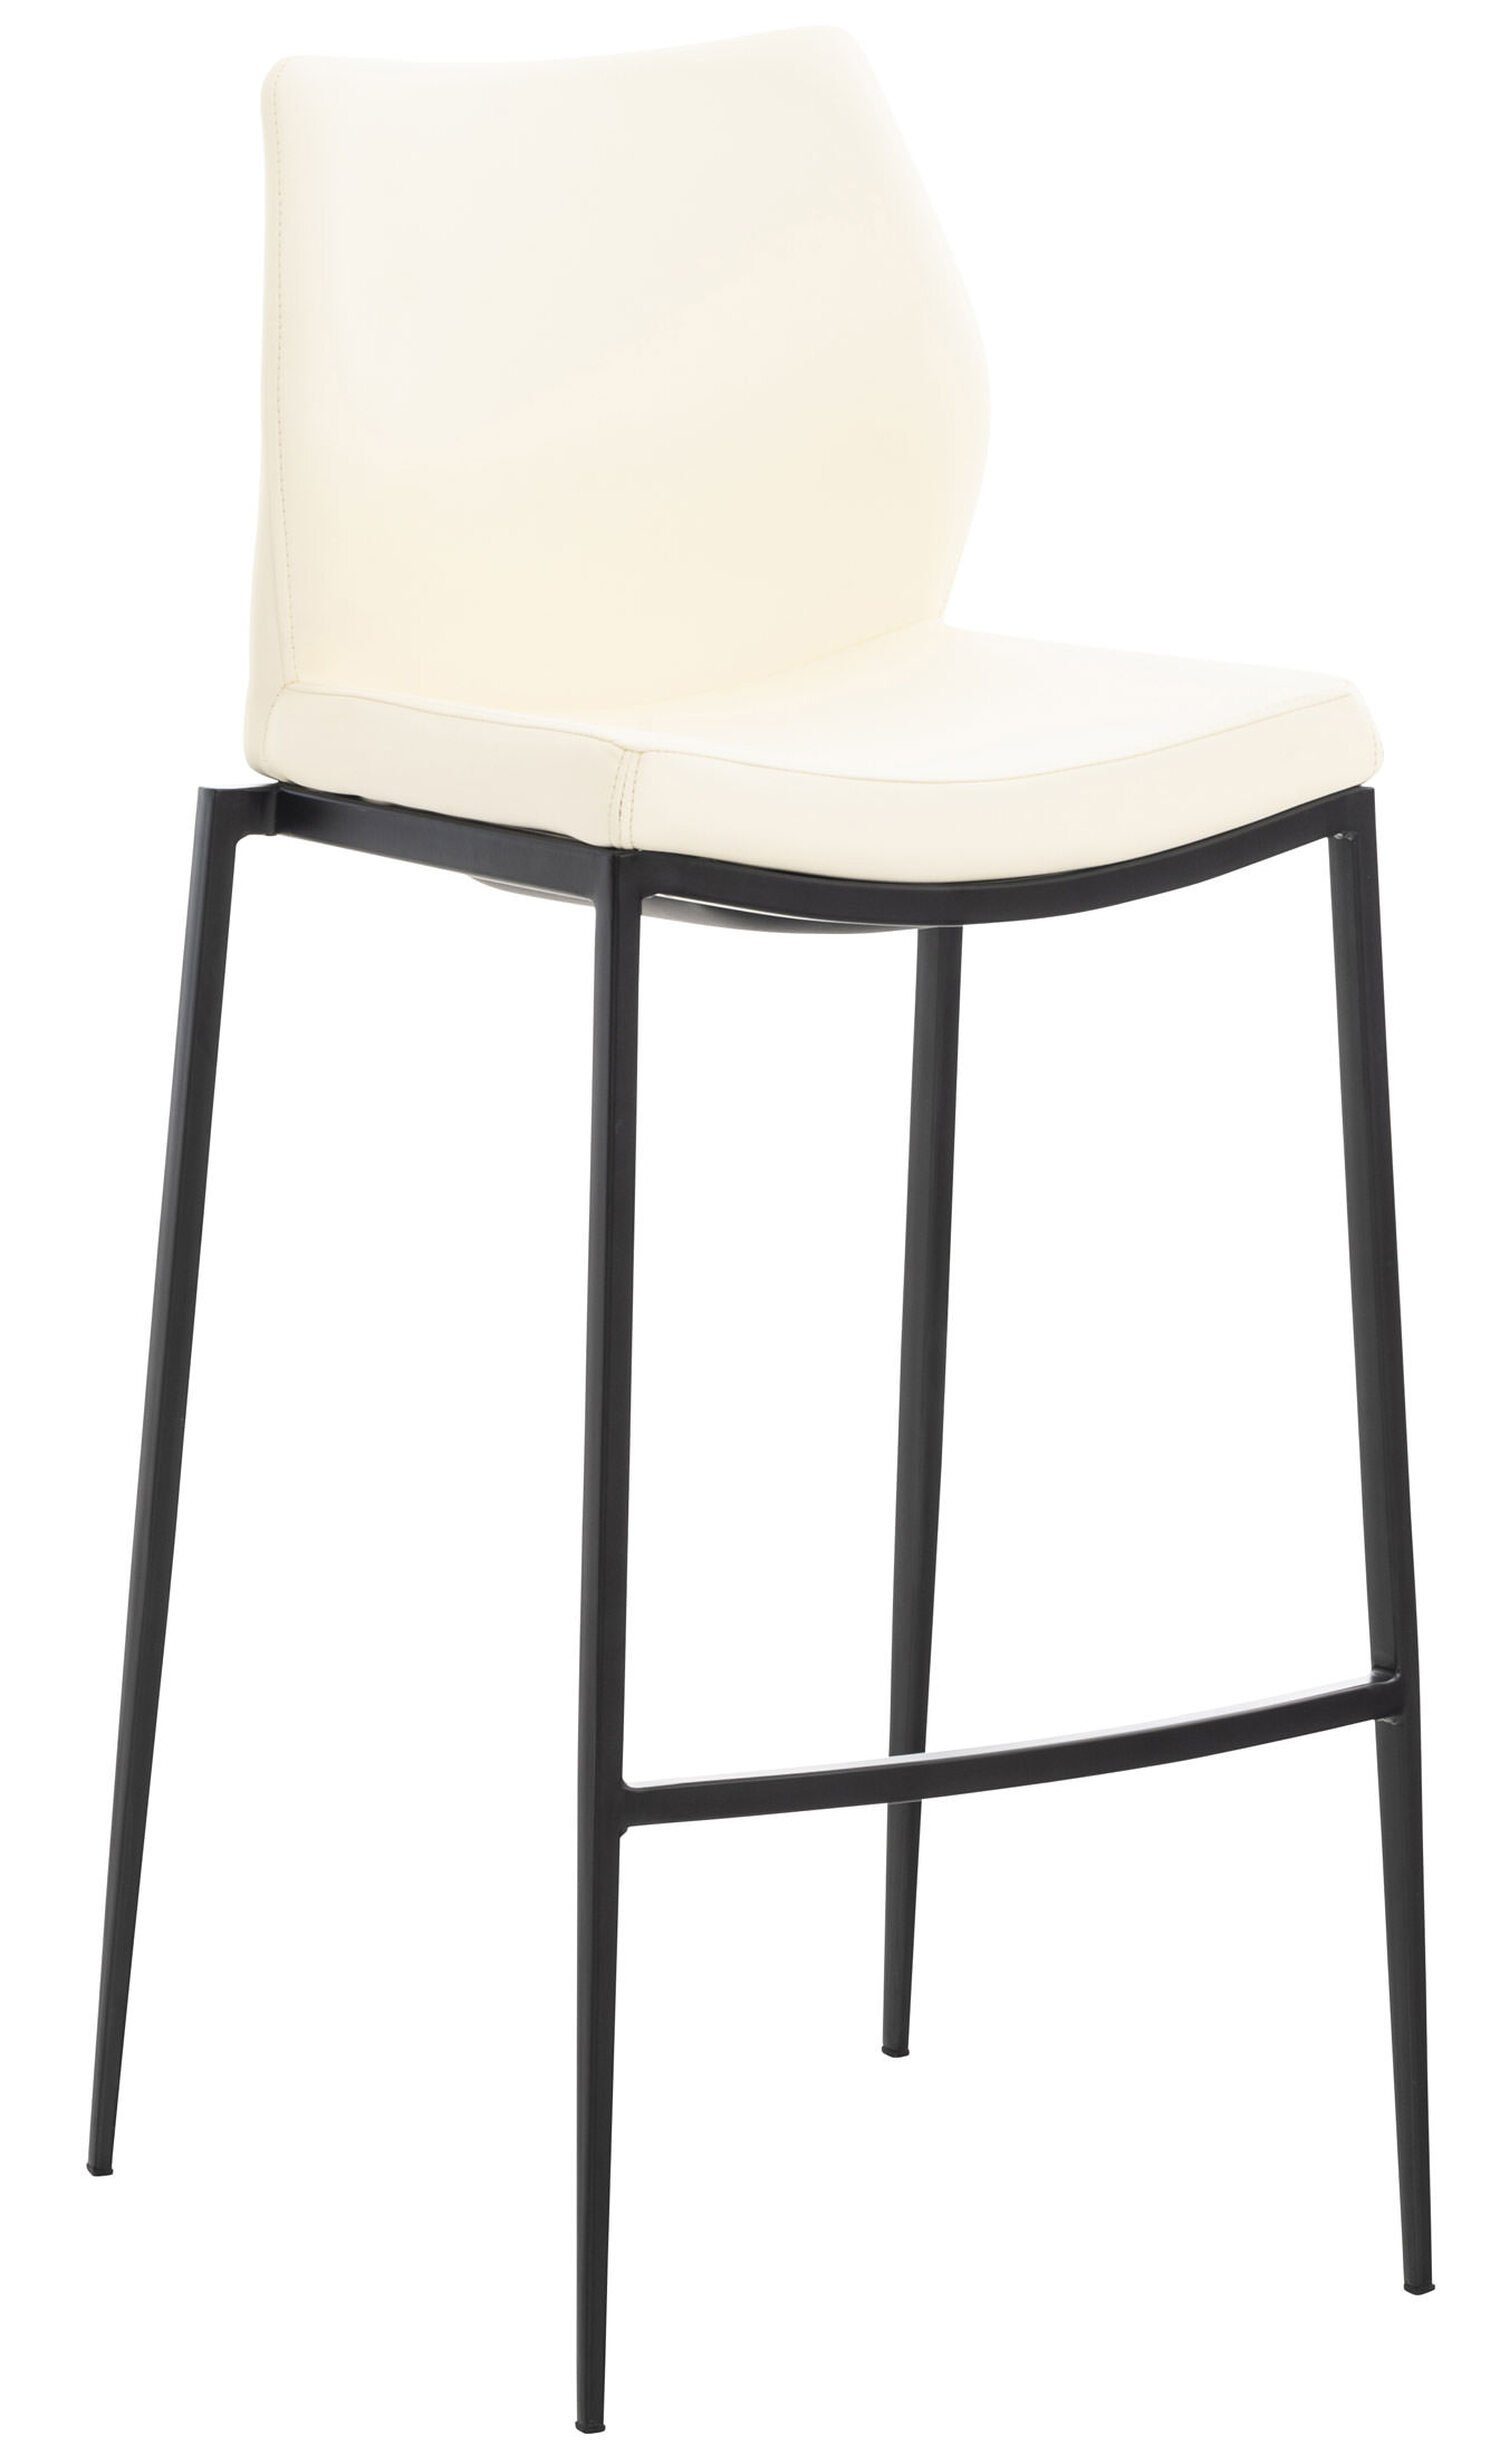 TPFLiving Barhocker Matheo mit bequemer Rückenlehne und angenehmer Fußstütze (Barstuhl Hocker für Theke & Küche - Tresenhocker), 4-Fuß Gestell Metall schwarz - Sitzfläche: Kunstleder Creme